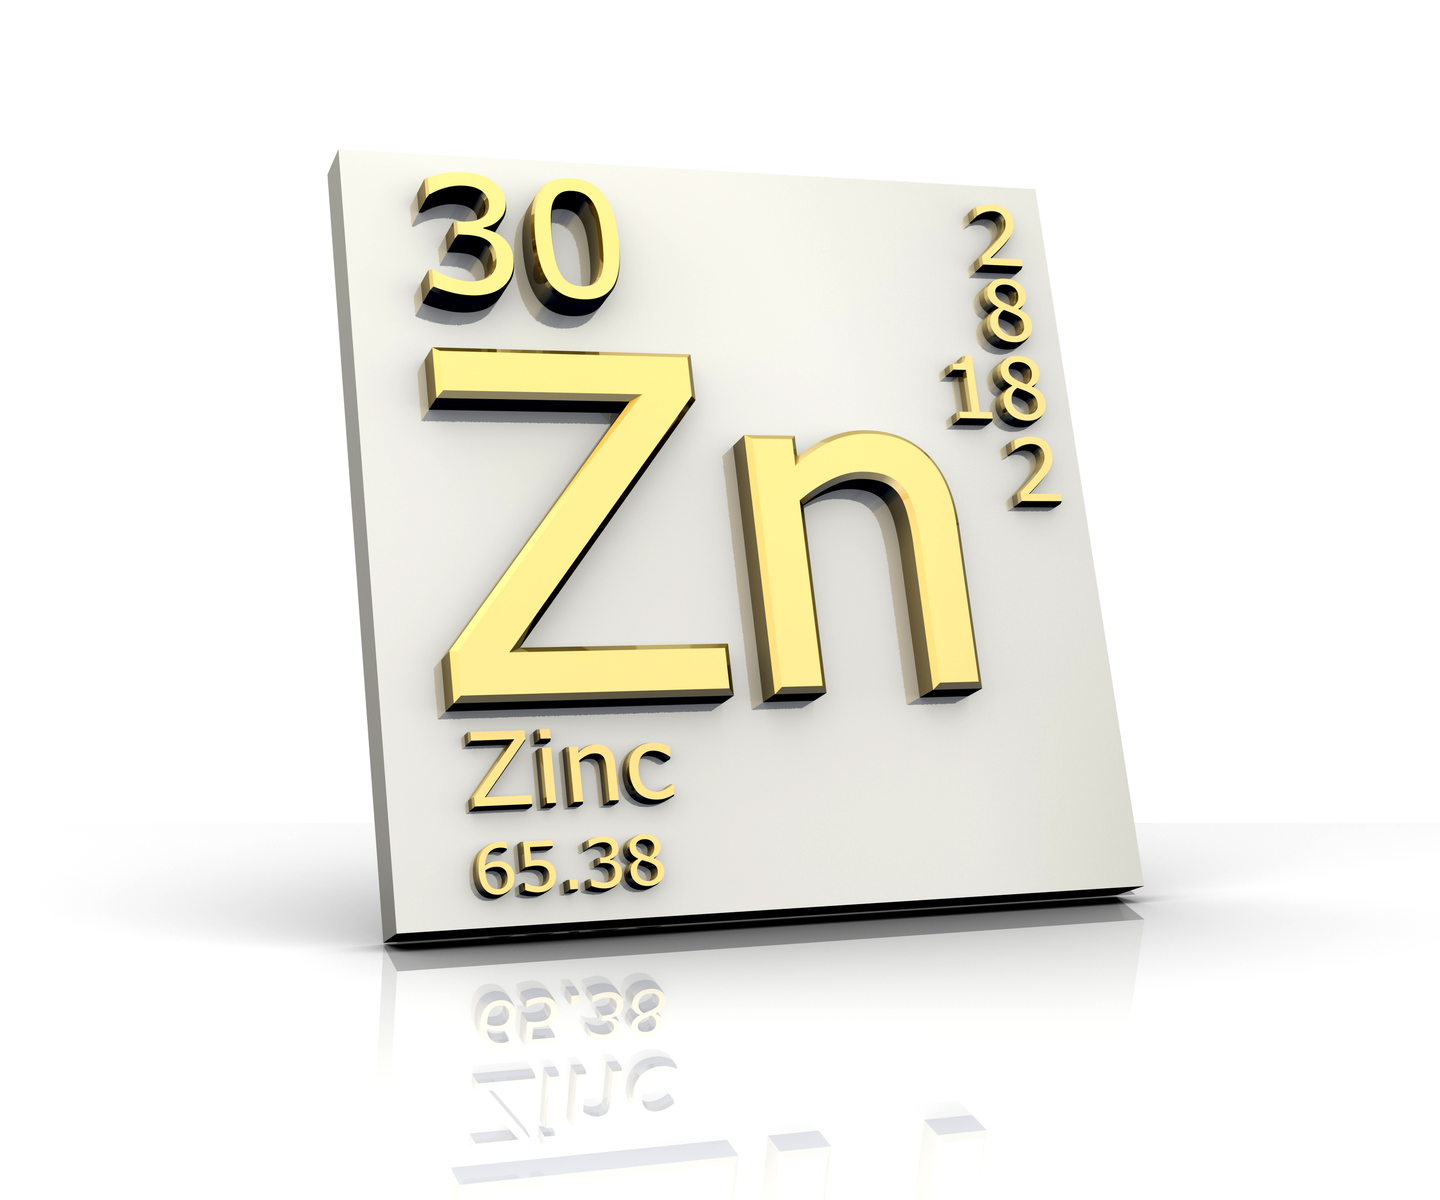 Understanding the zinc pathways in animals